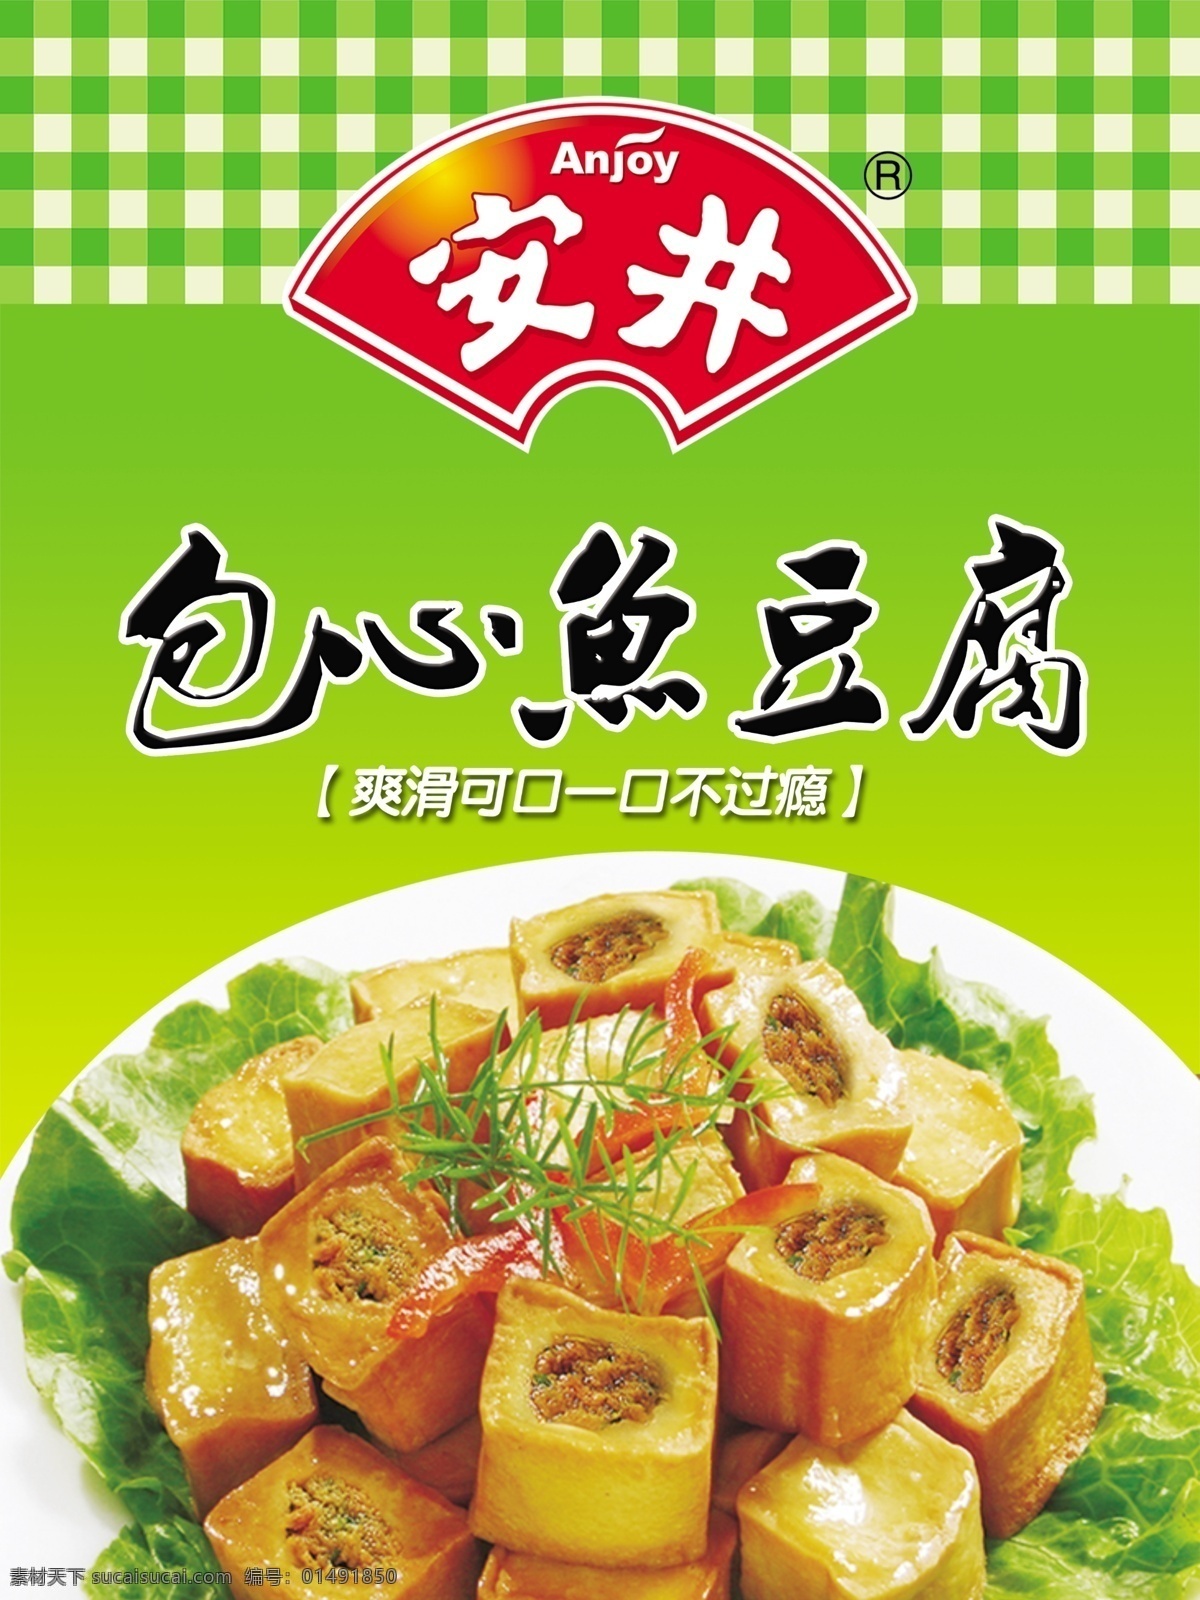 安井海报 安井标志 包心鱼豆腐 包心鱼豆腐品 绿色格子 渐变绿色